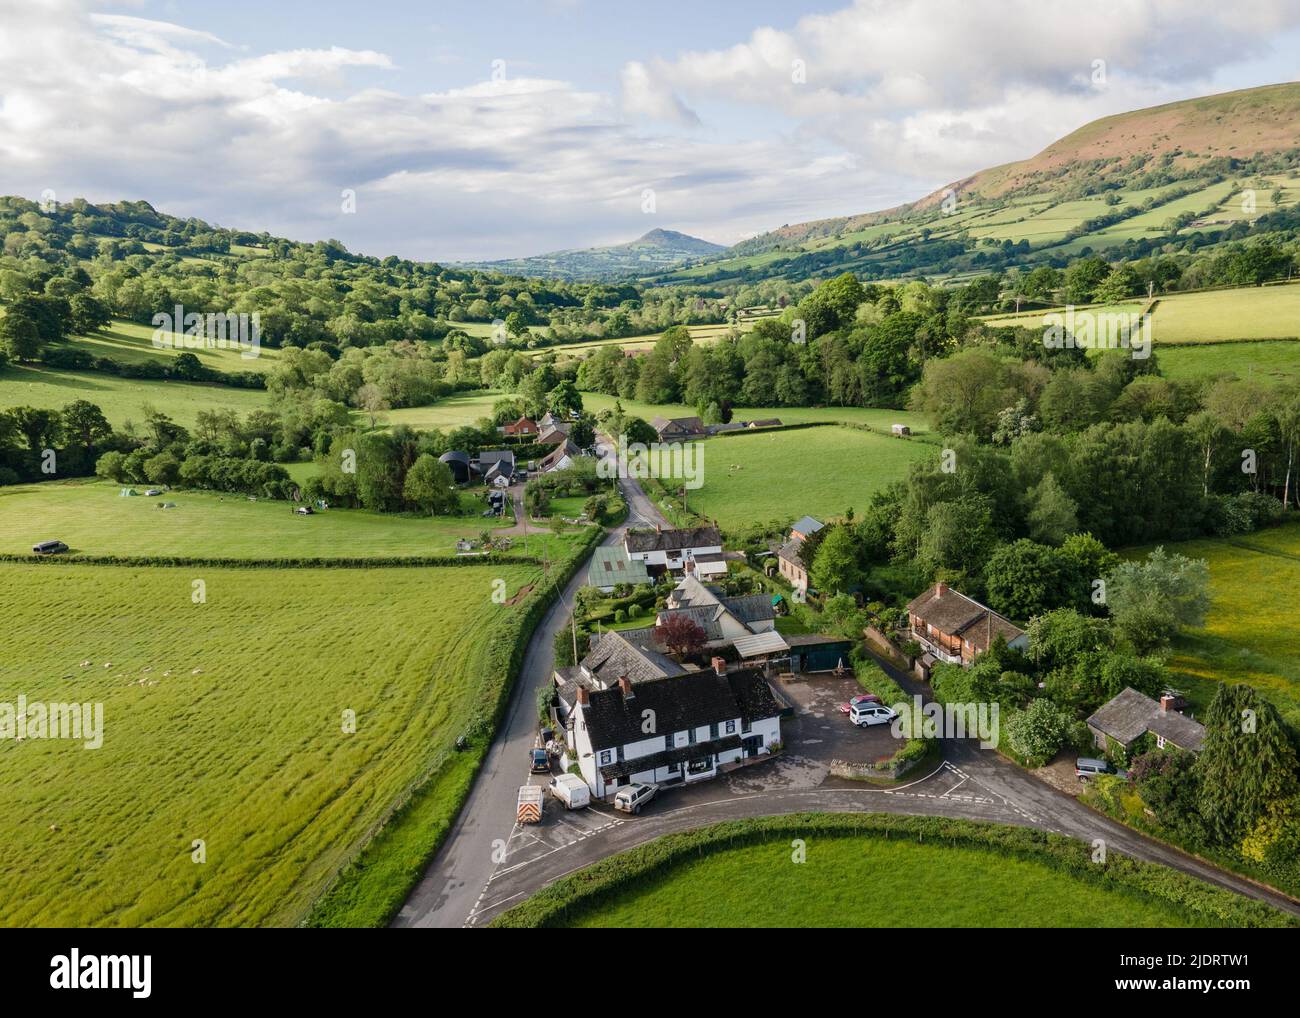 Vue aérienne d'un pub anglais rural dans le Herefordshire, à la frontière Angleterre-pays de Galles - Royaume-Uni Banque D'Images